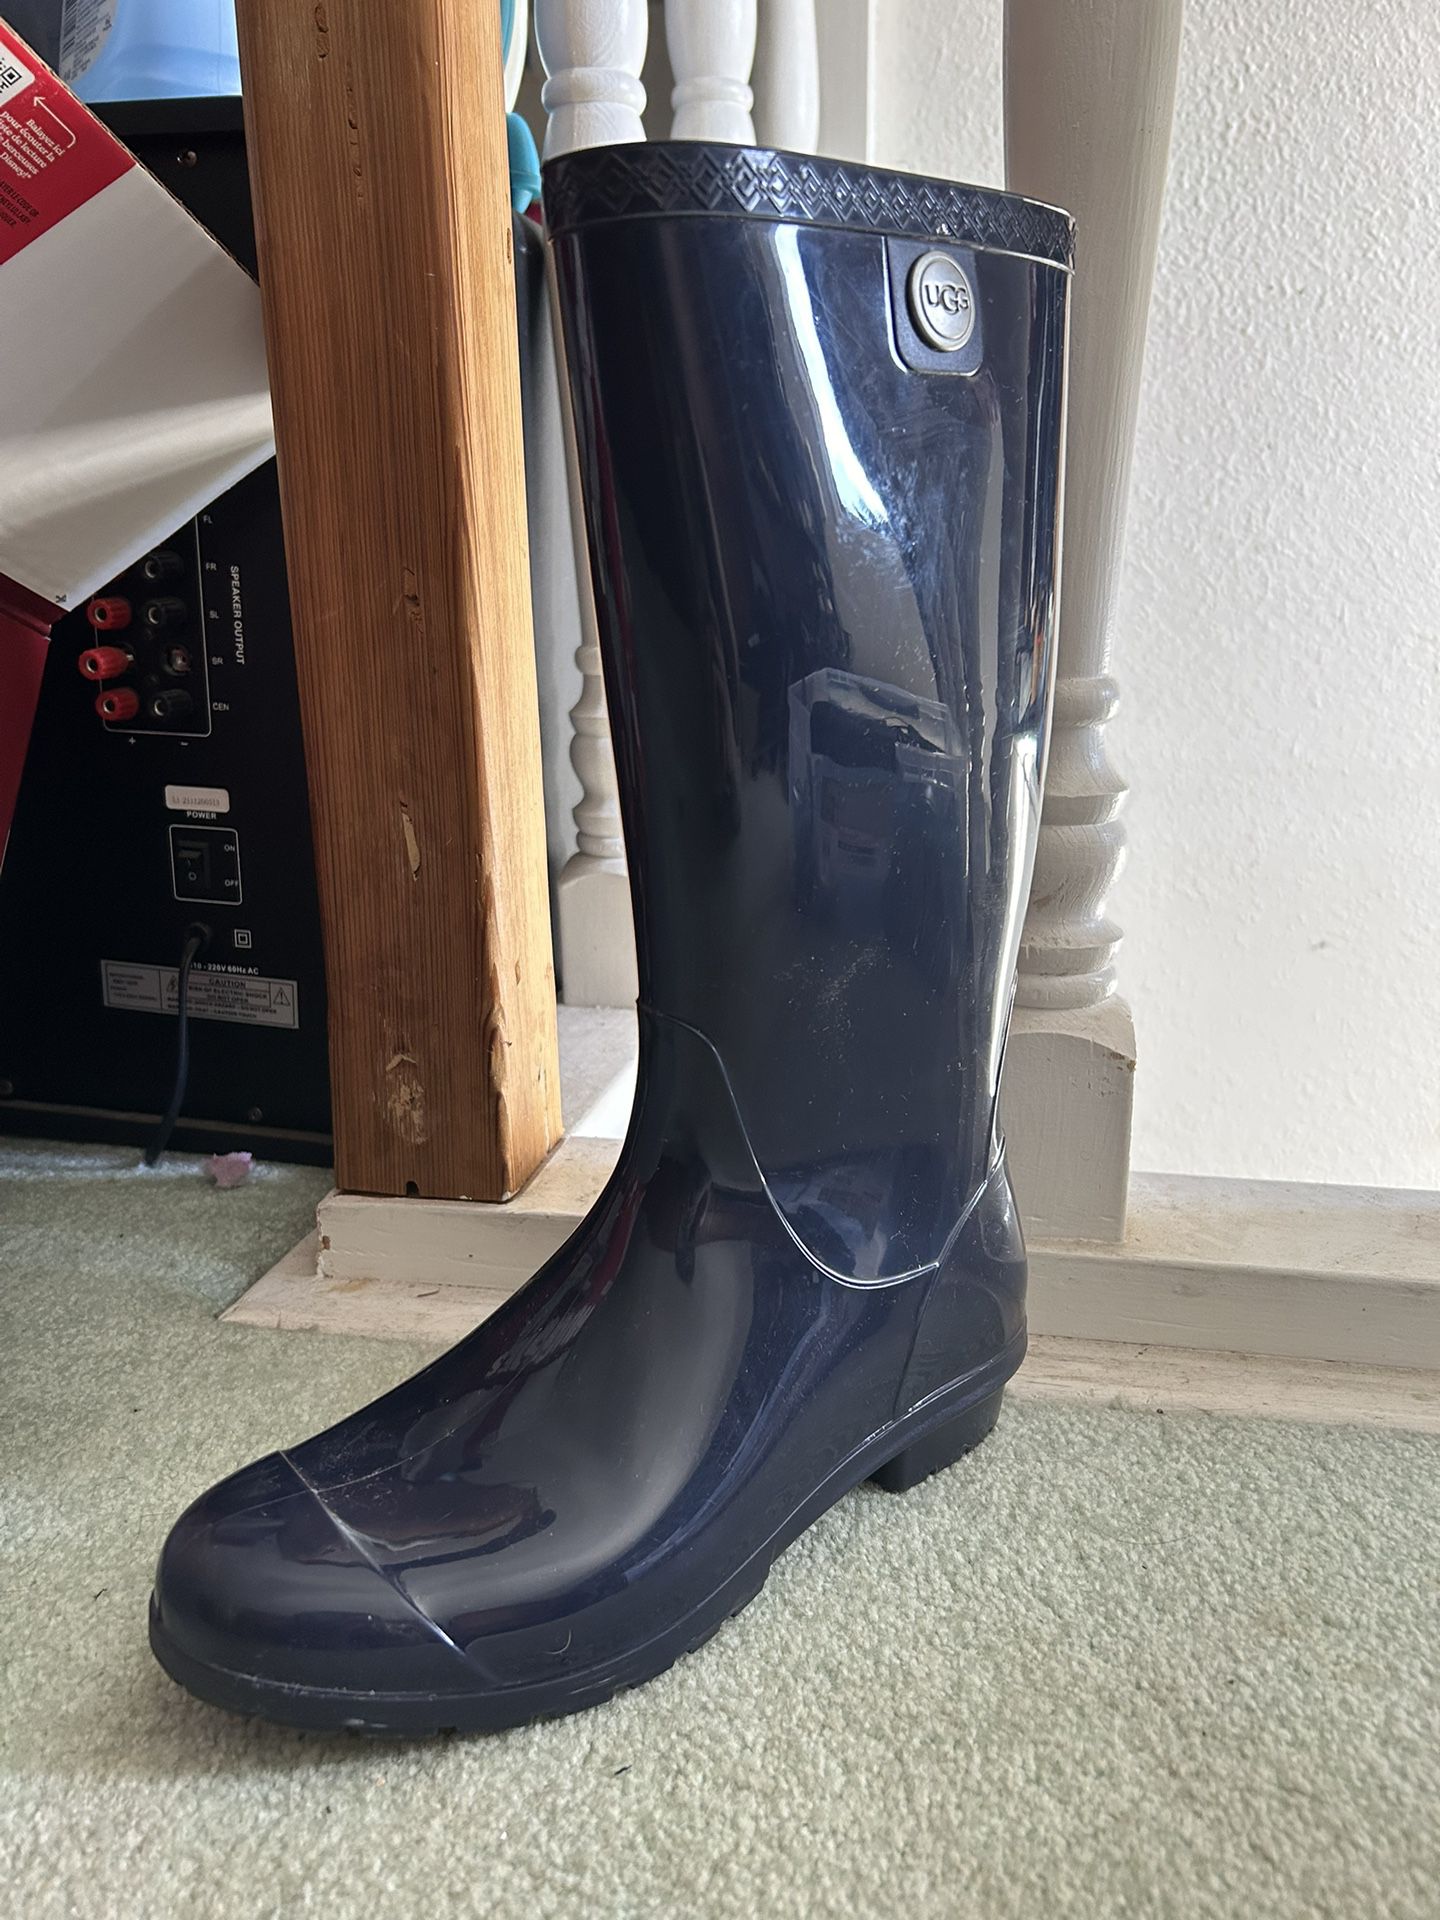 Ugg Rain boot Size 8 